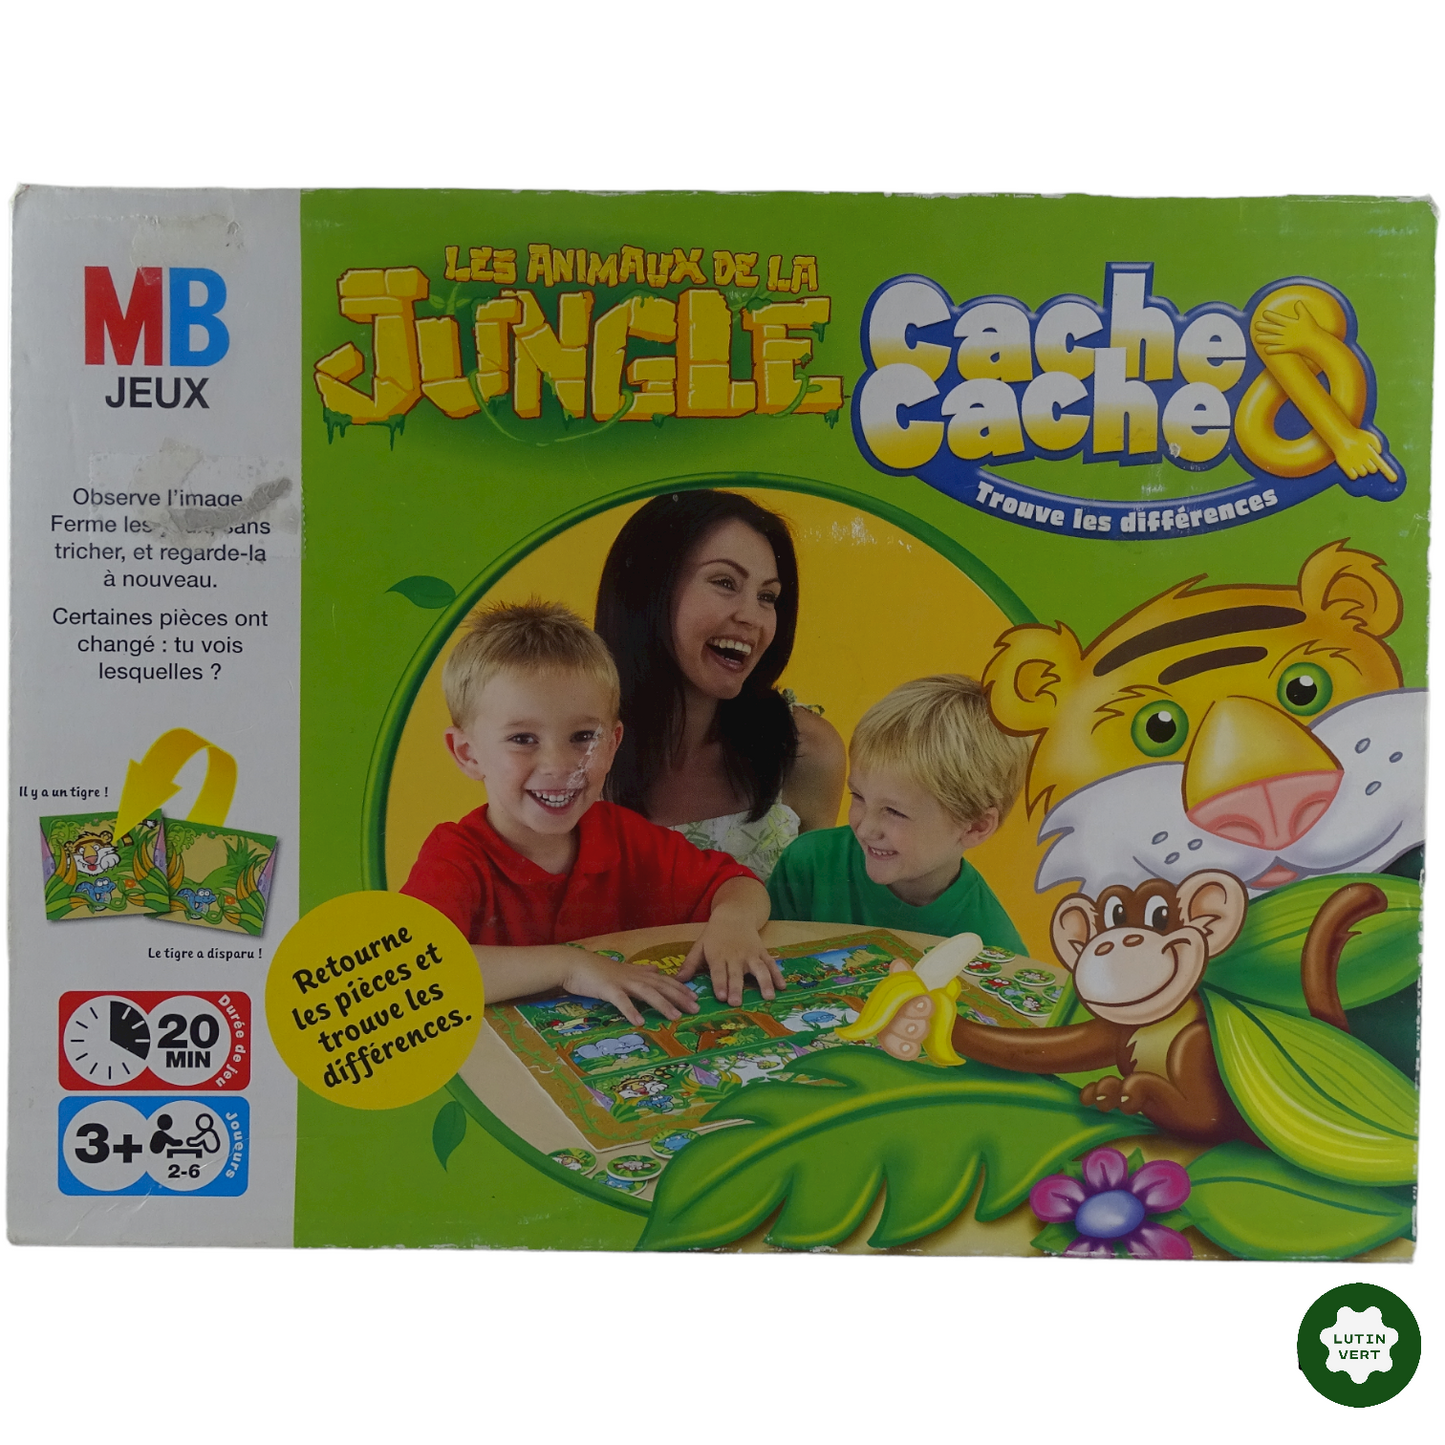 Les animaux de la Jungle occasion MB JEUX - Dès 3 ans | Lutin Vert